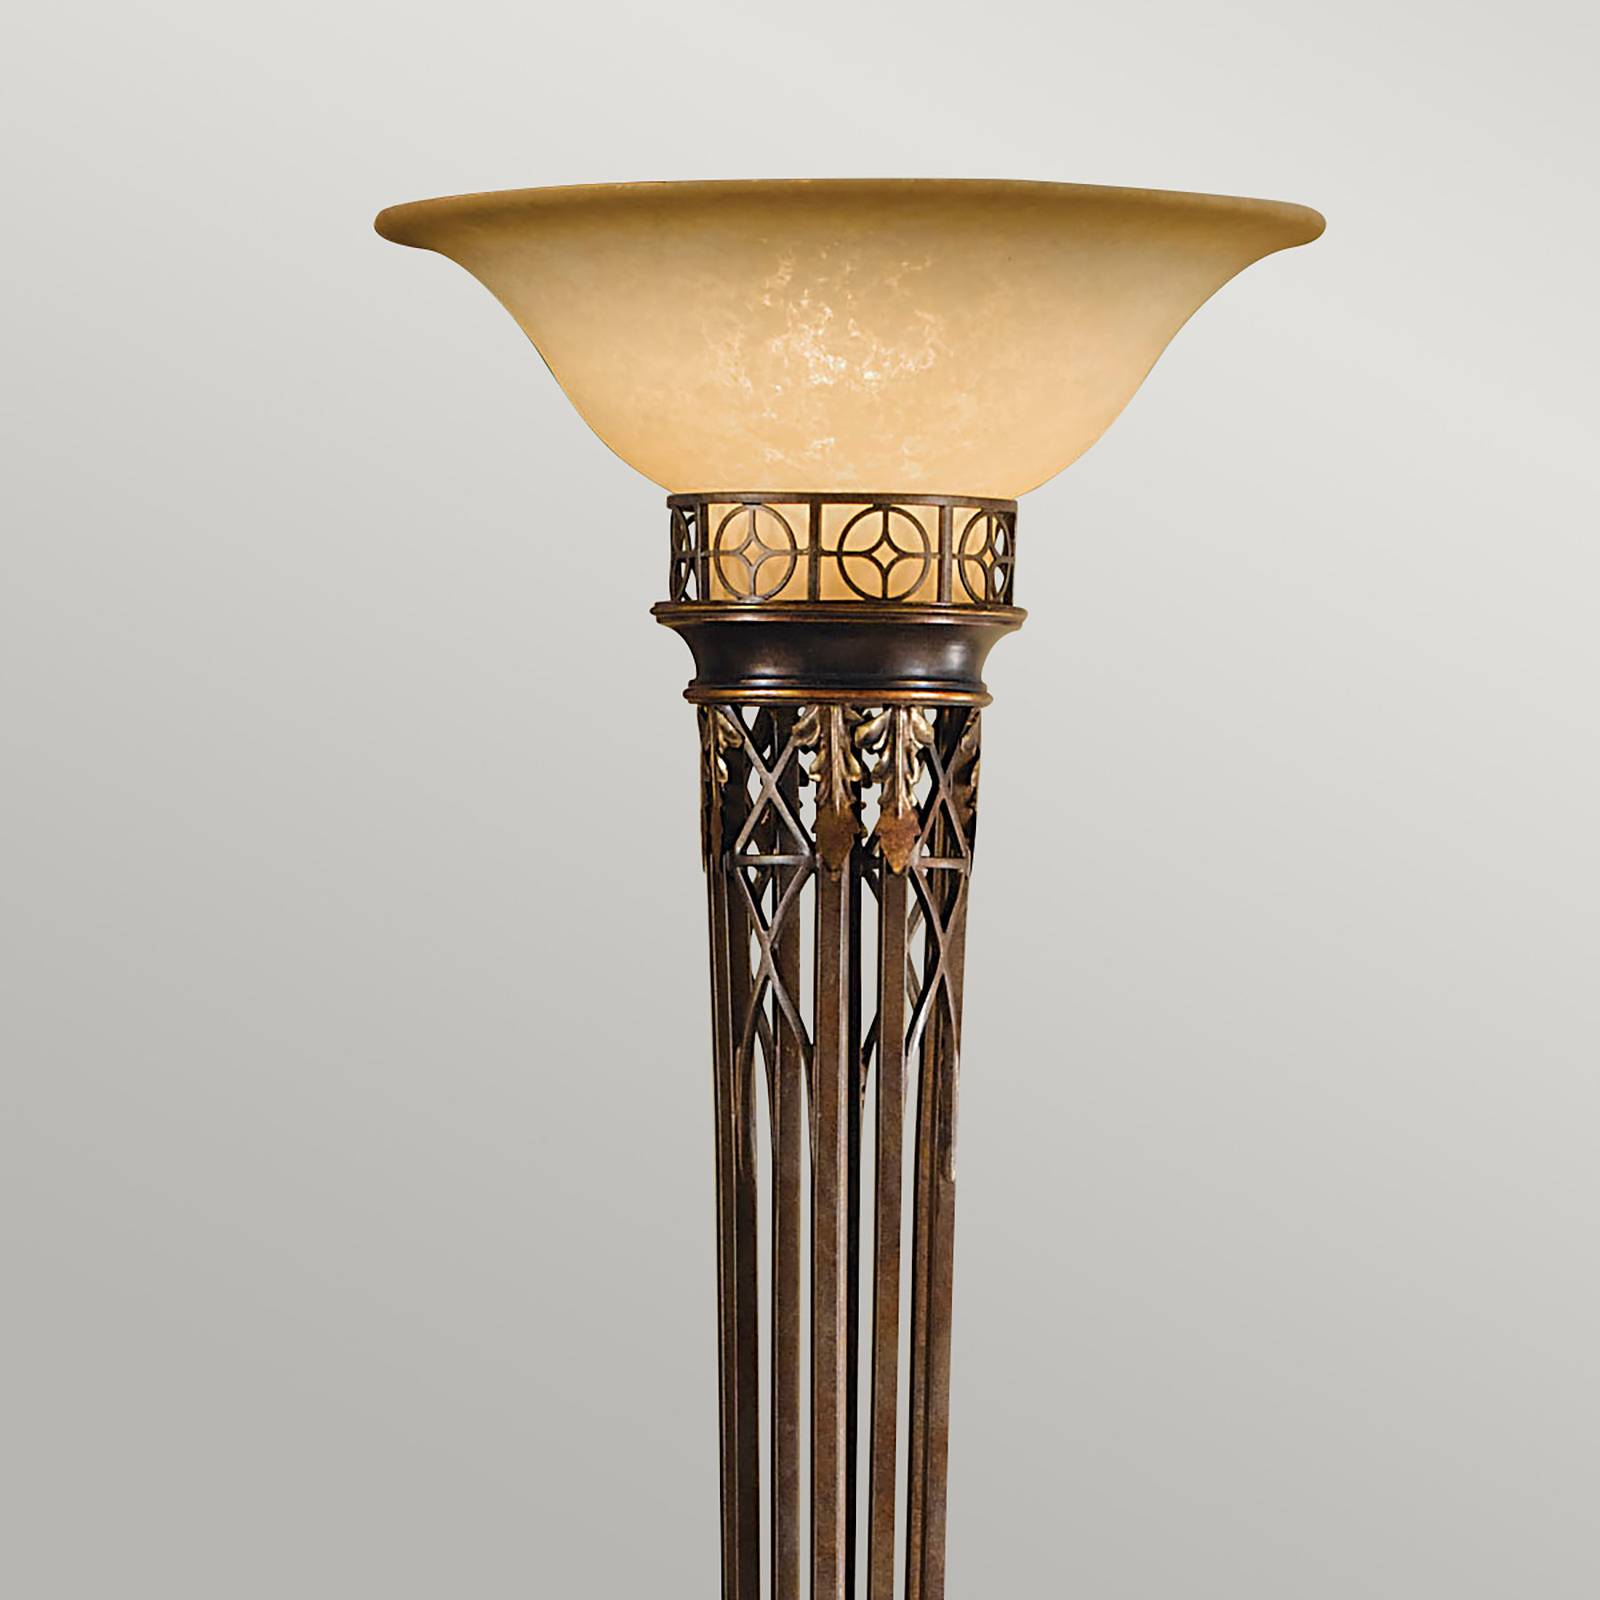 Feiss opera állólámpa, 189 cm magas, fényezett arany